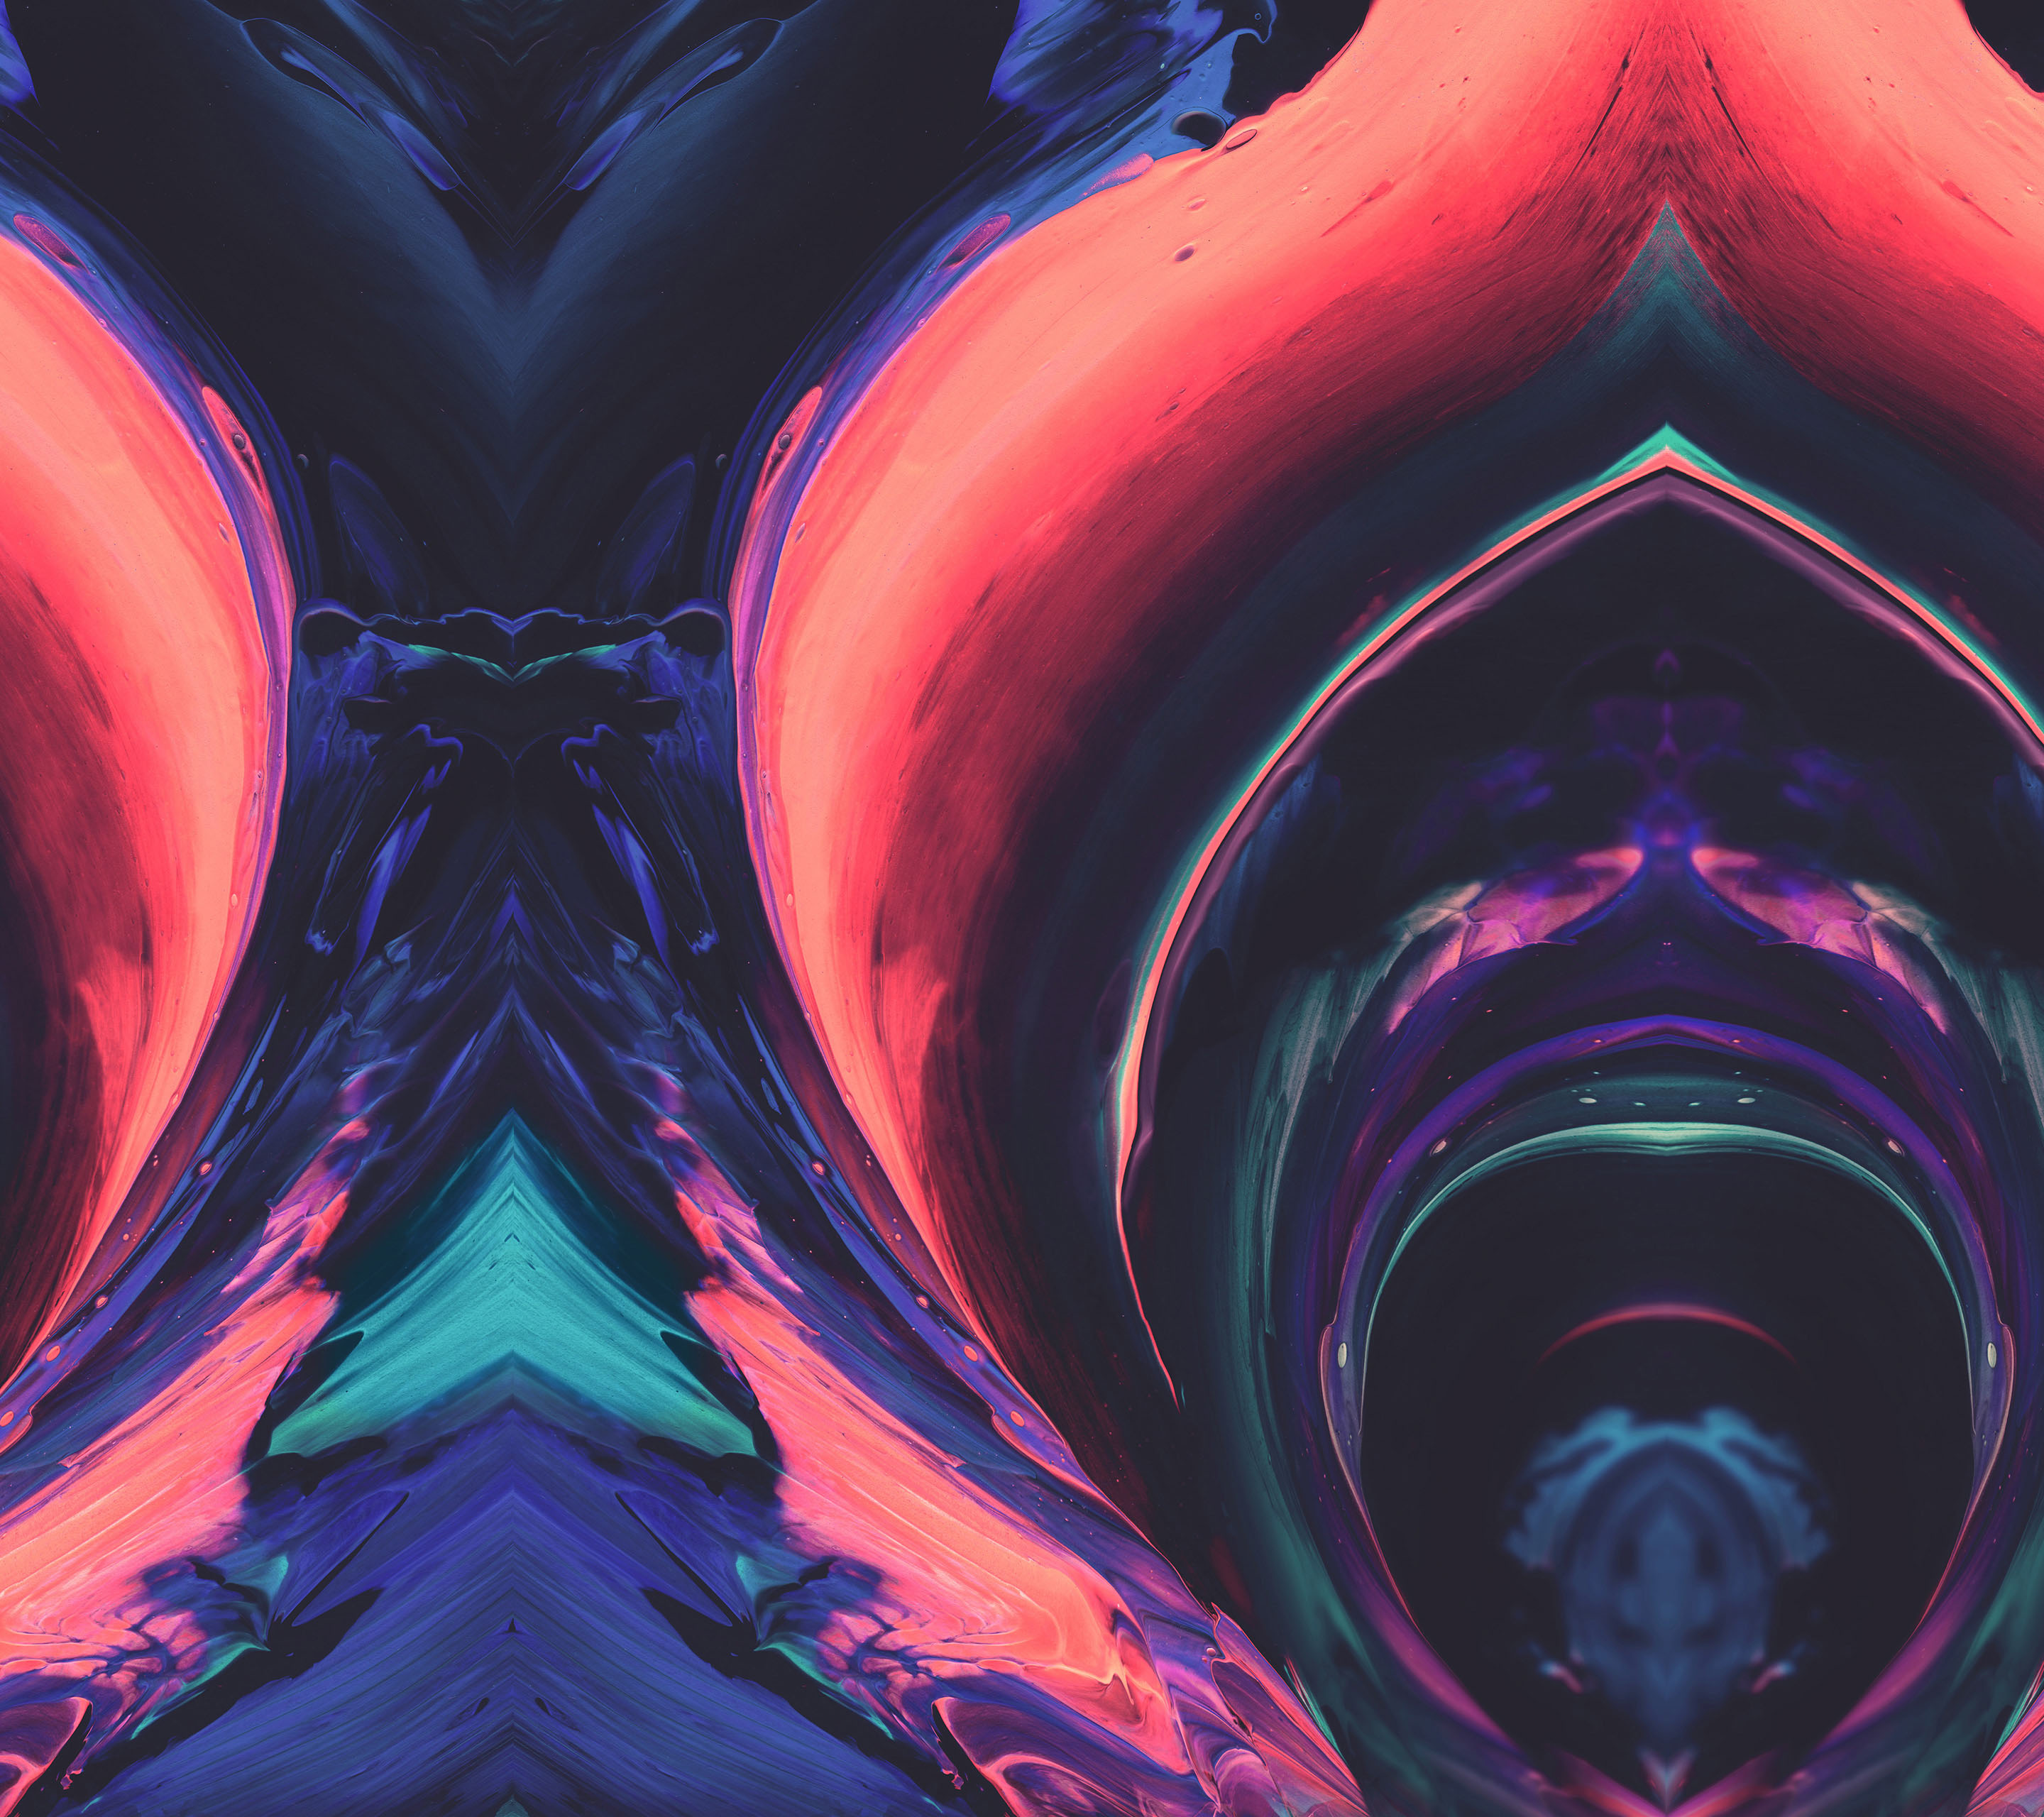 htc 10 wallpaper,fractal art,purple,pink,psychedelic art,pattern